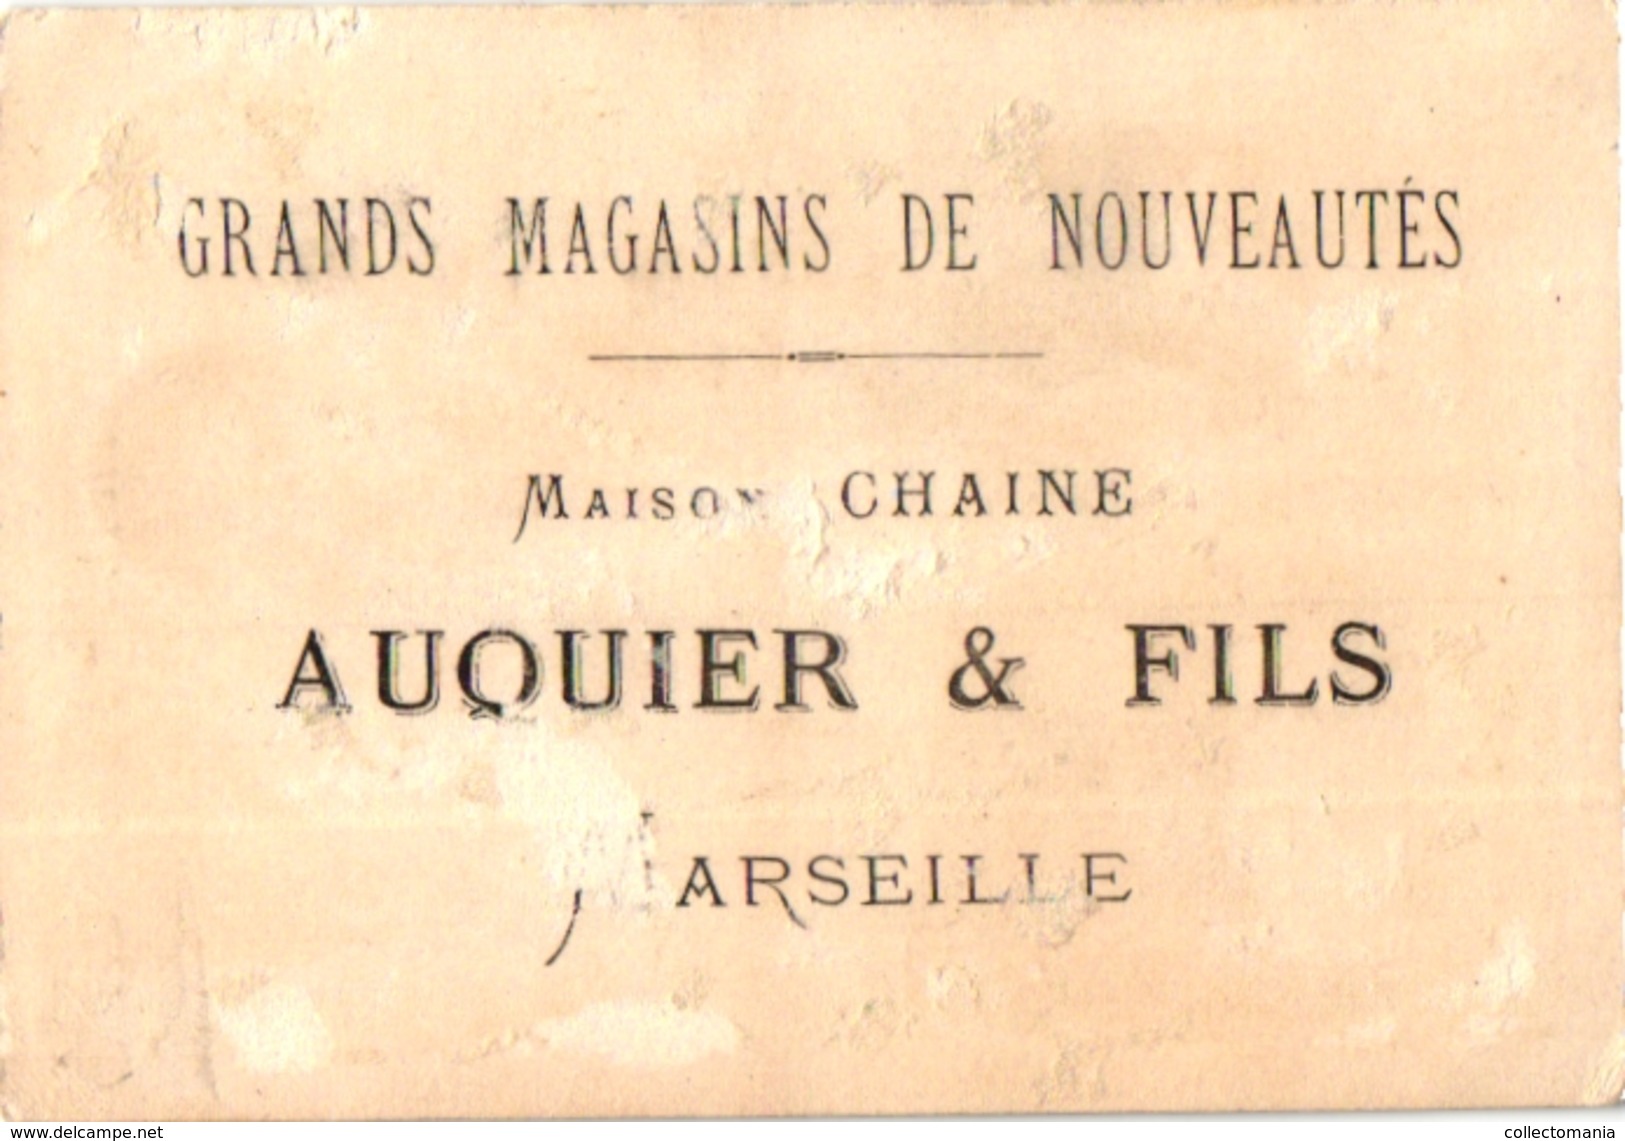 6 Cards  PUB Tour St Jaques Auquier Marseille Epicerie des Halles Tours  Imp APPEL Paris Pierrot  Dices DES  Dés  WURFEL